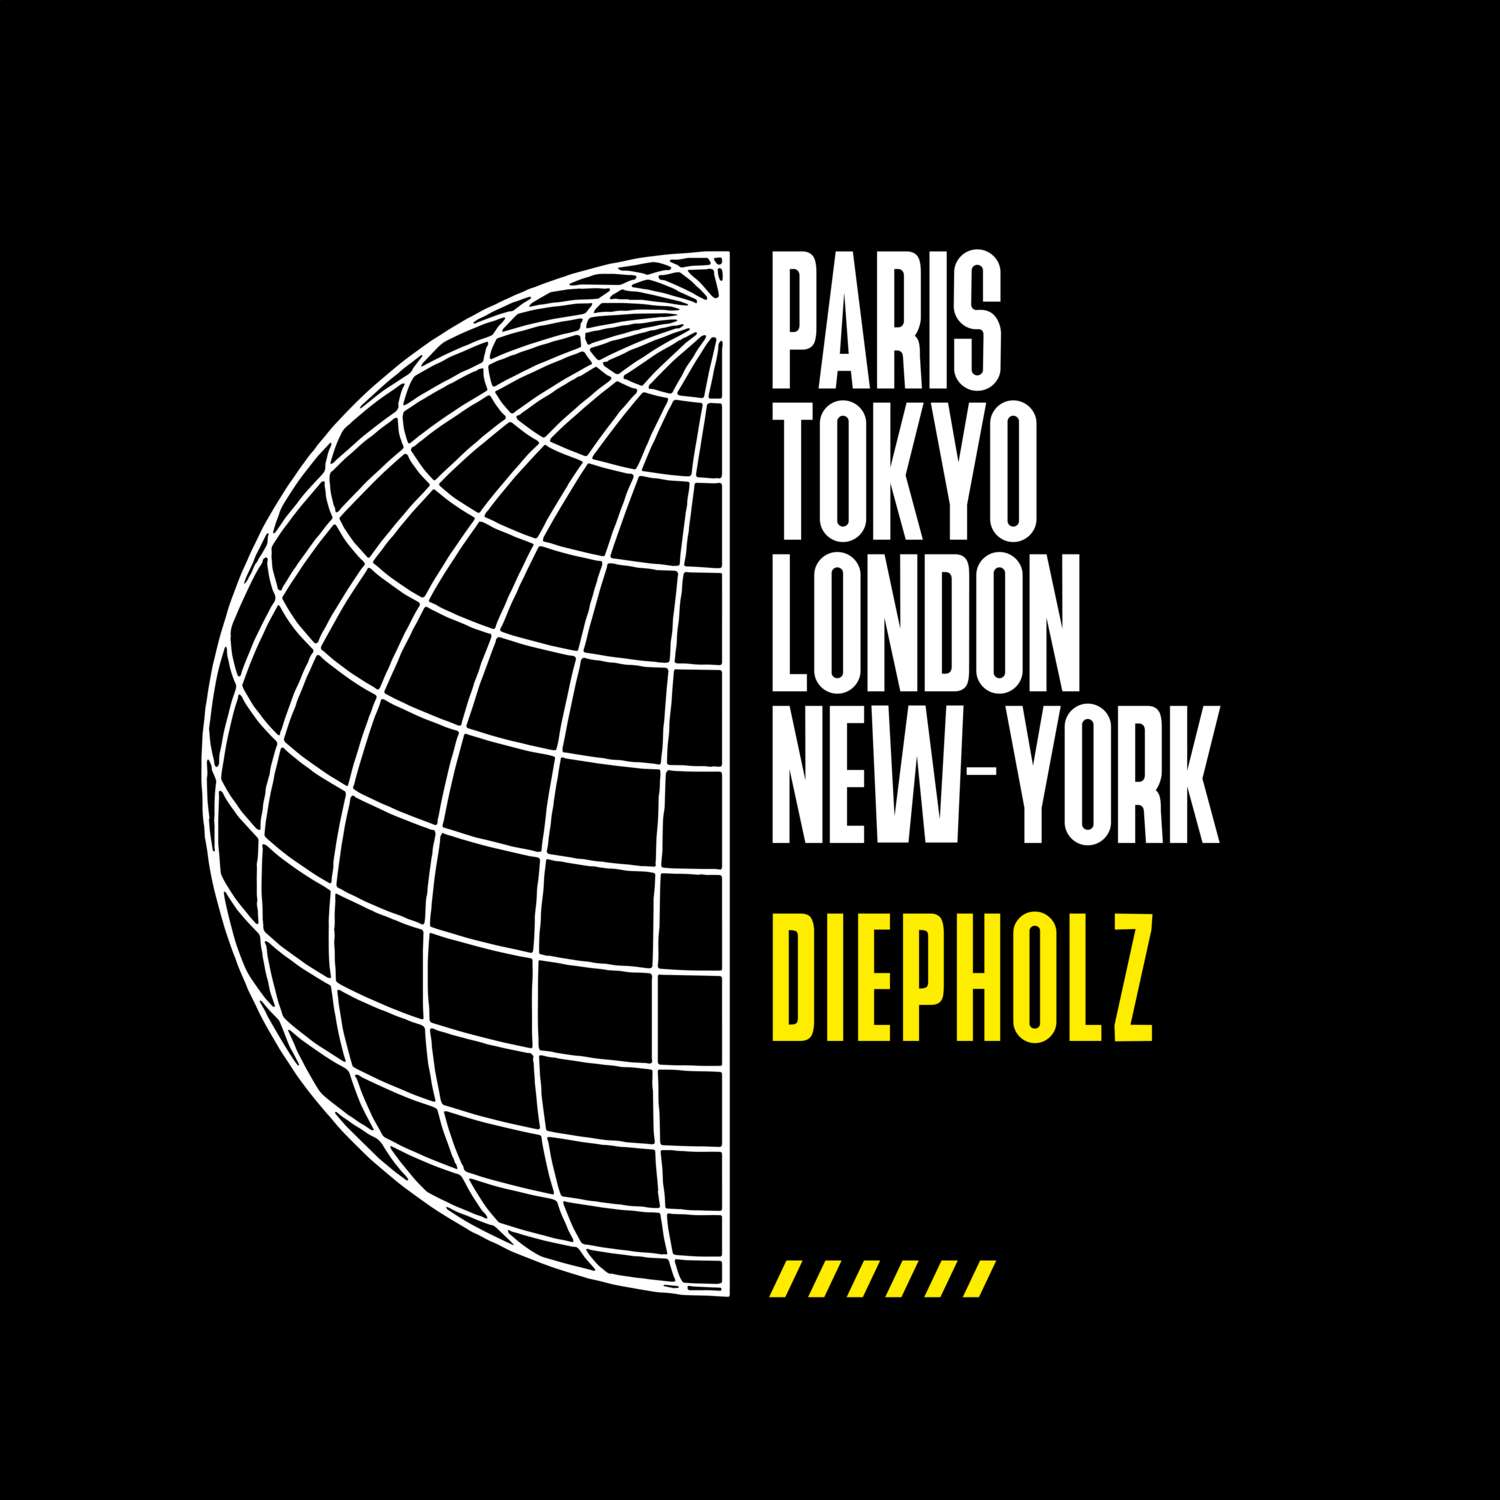 Diepholz T-Shirt »Paris Tokyo London«